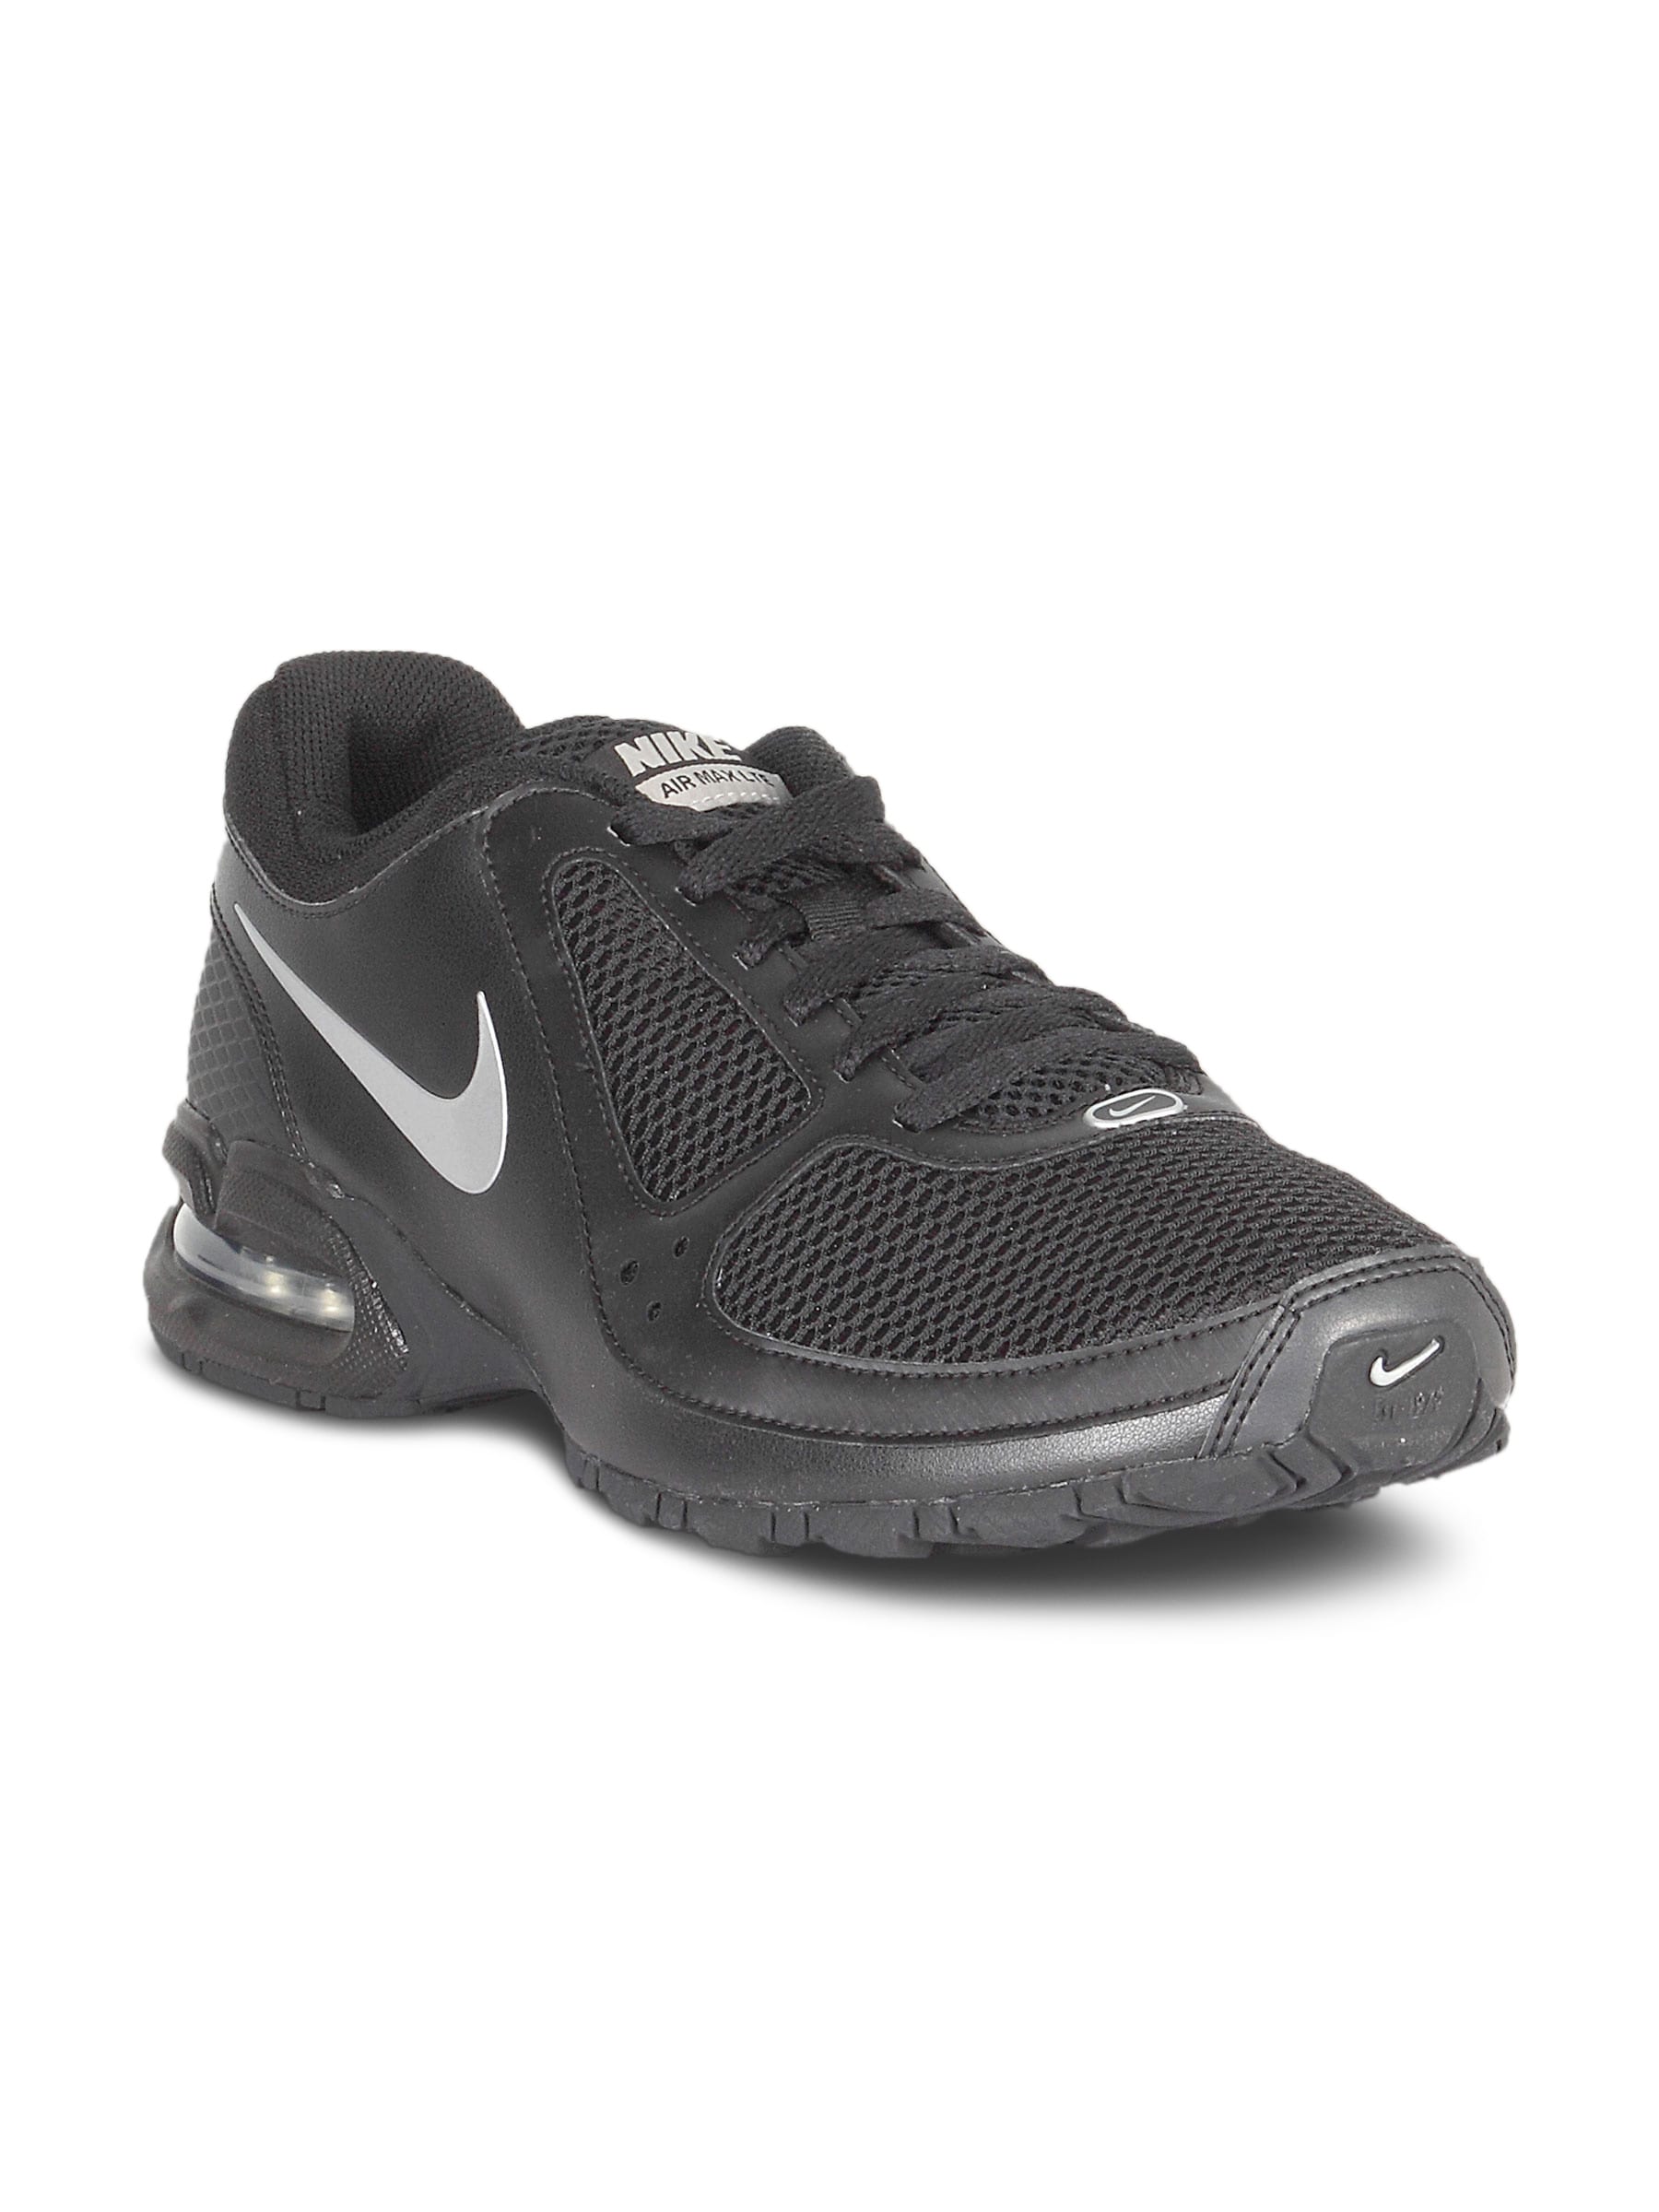 Nike Men's Air Max Black Shoe